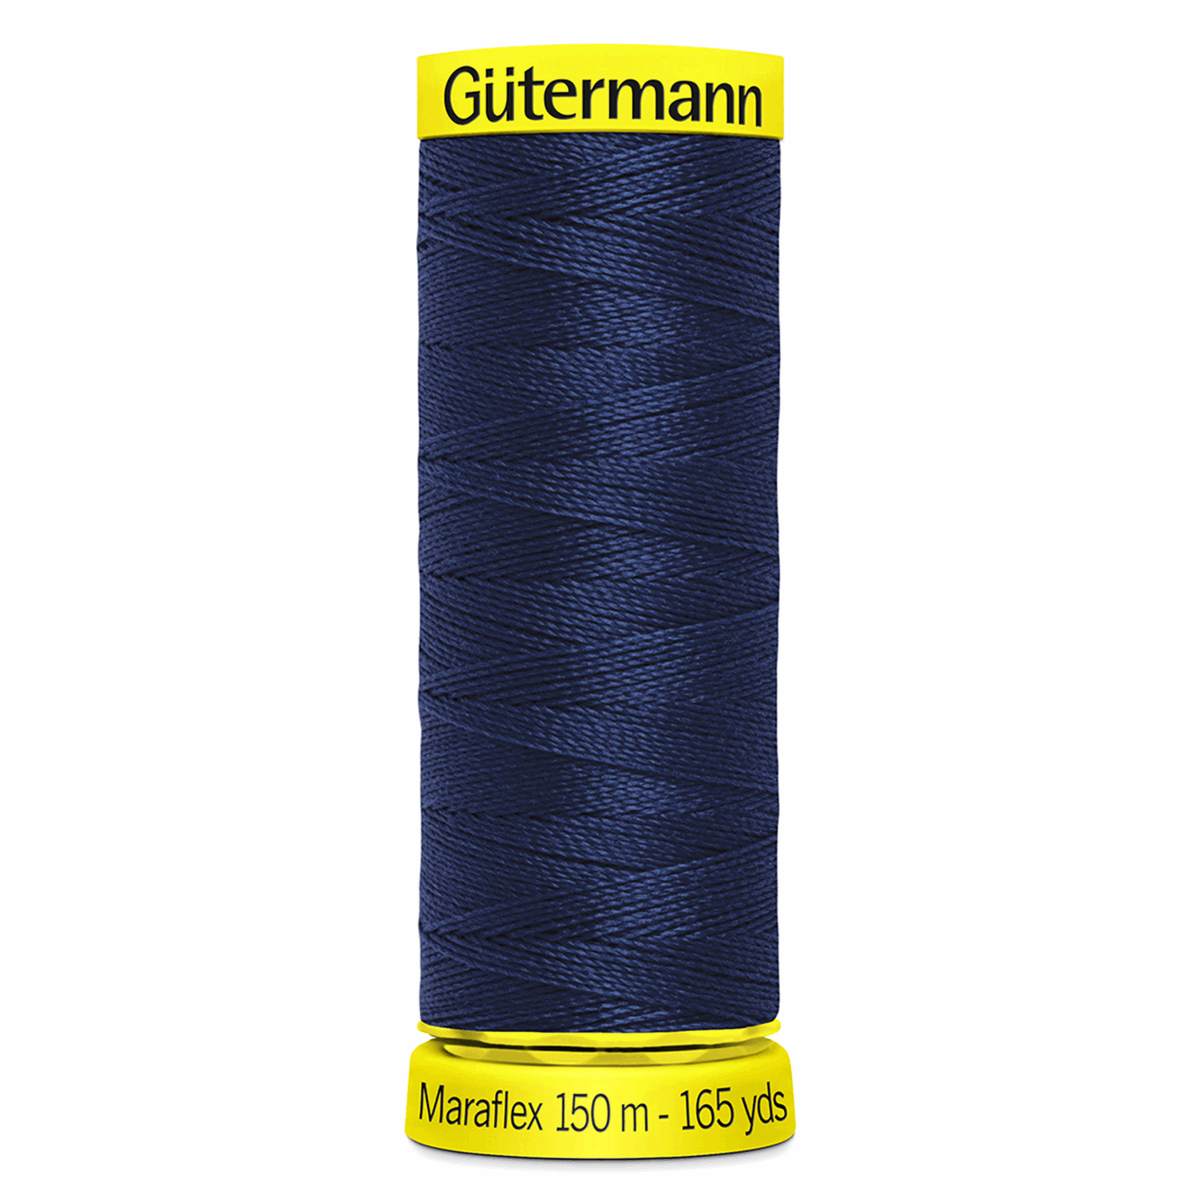 Gutermann Maraflex Elastic Sewing Thread 150m Midnight 310